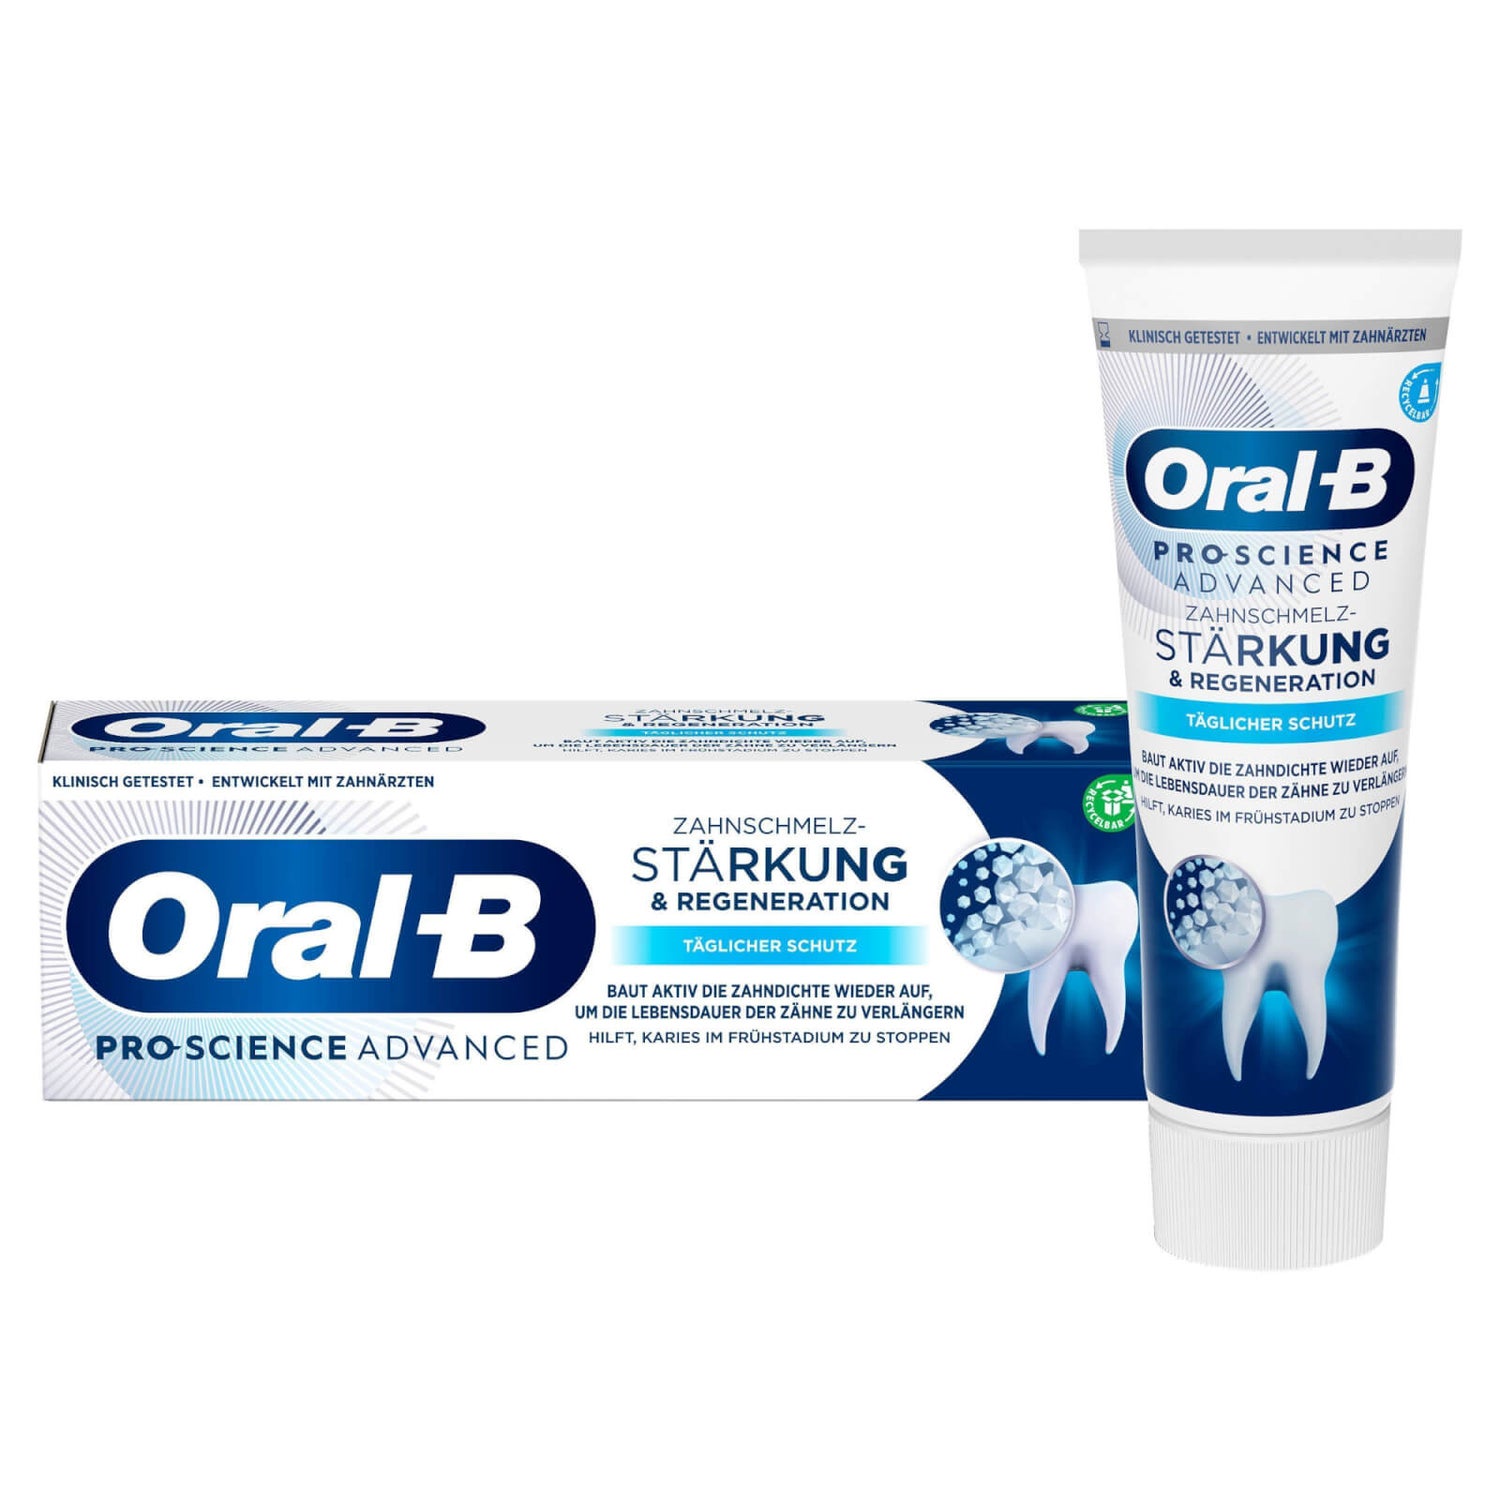 Oral-B PRO-SCIENCE ADVANCED Zahnschmelzstärkung & -regeneration Täglicher Schutz Zahncreme 75ml